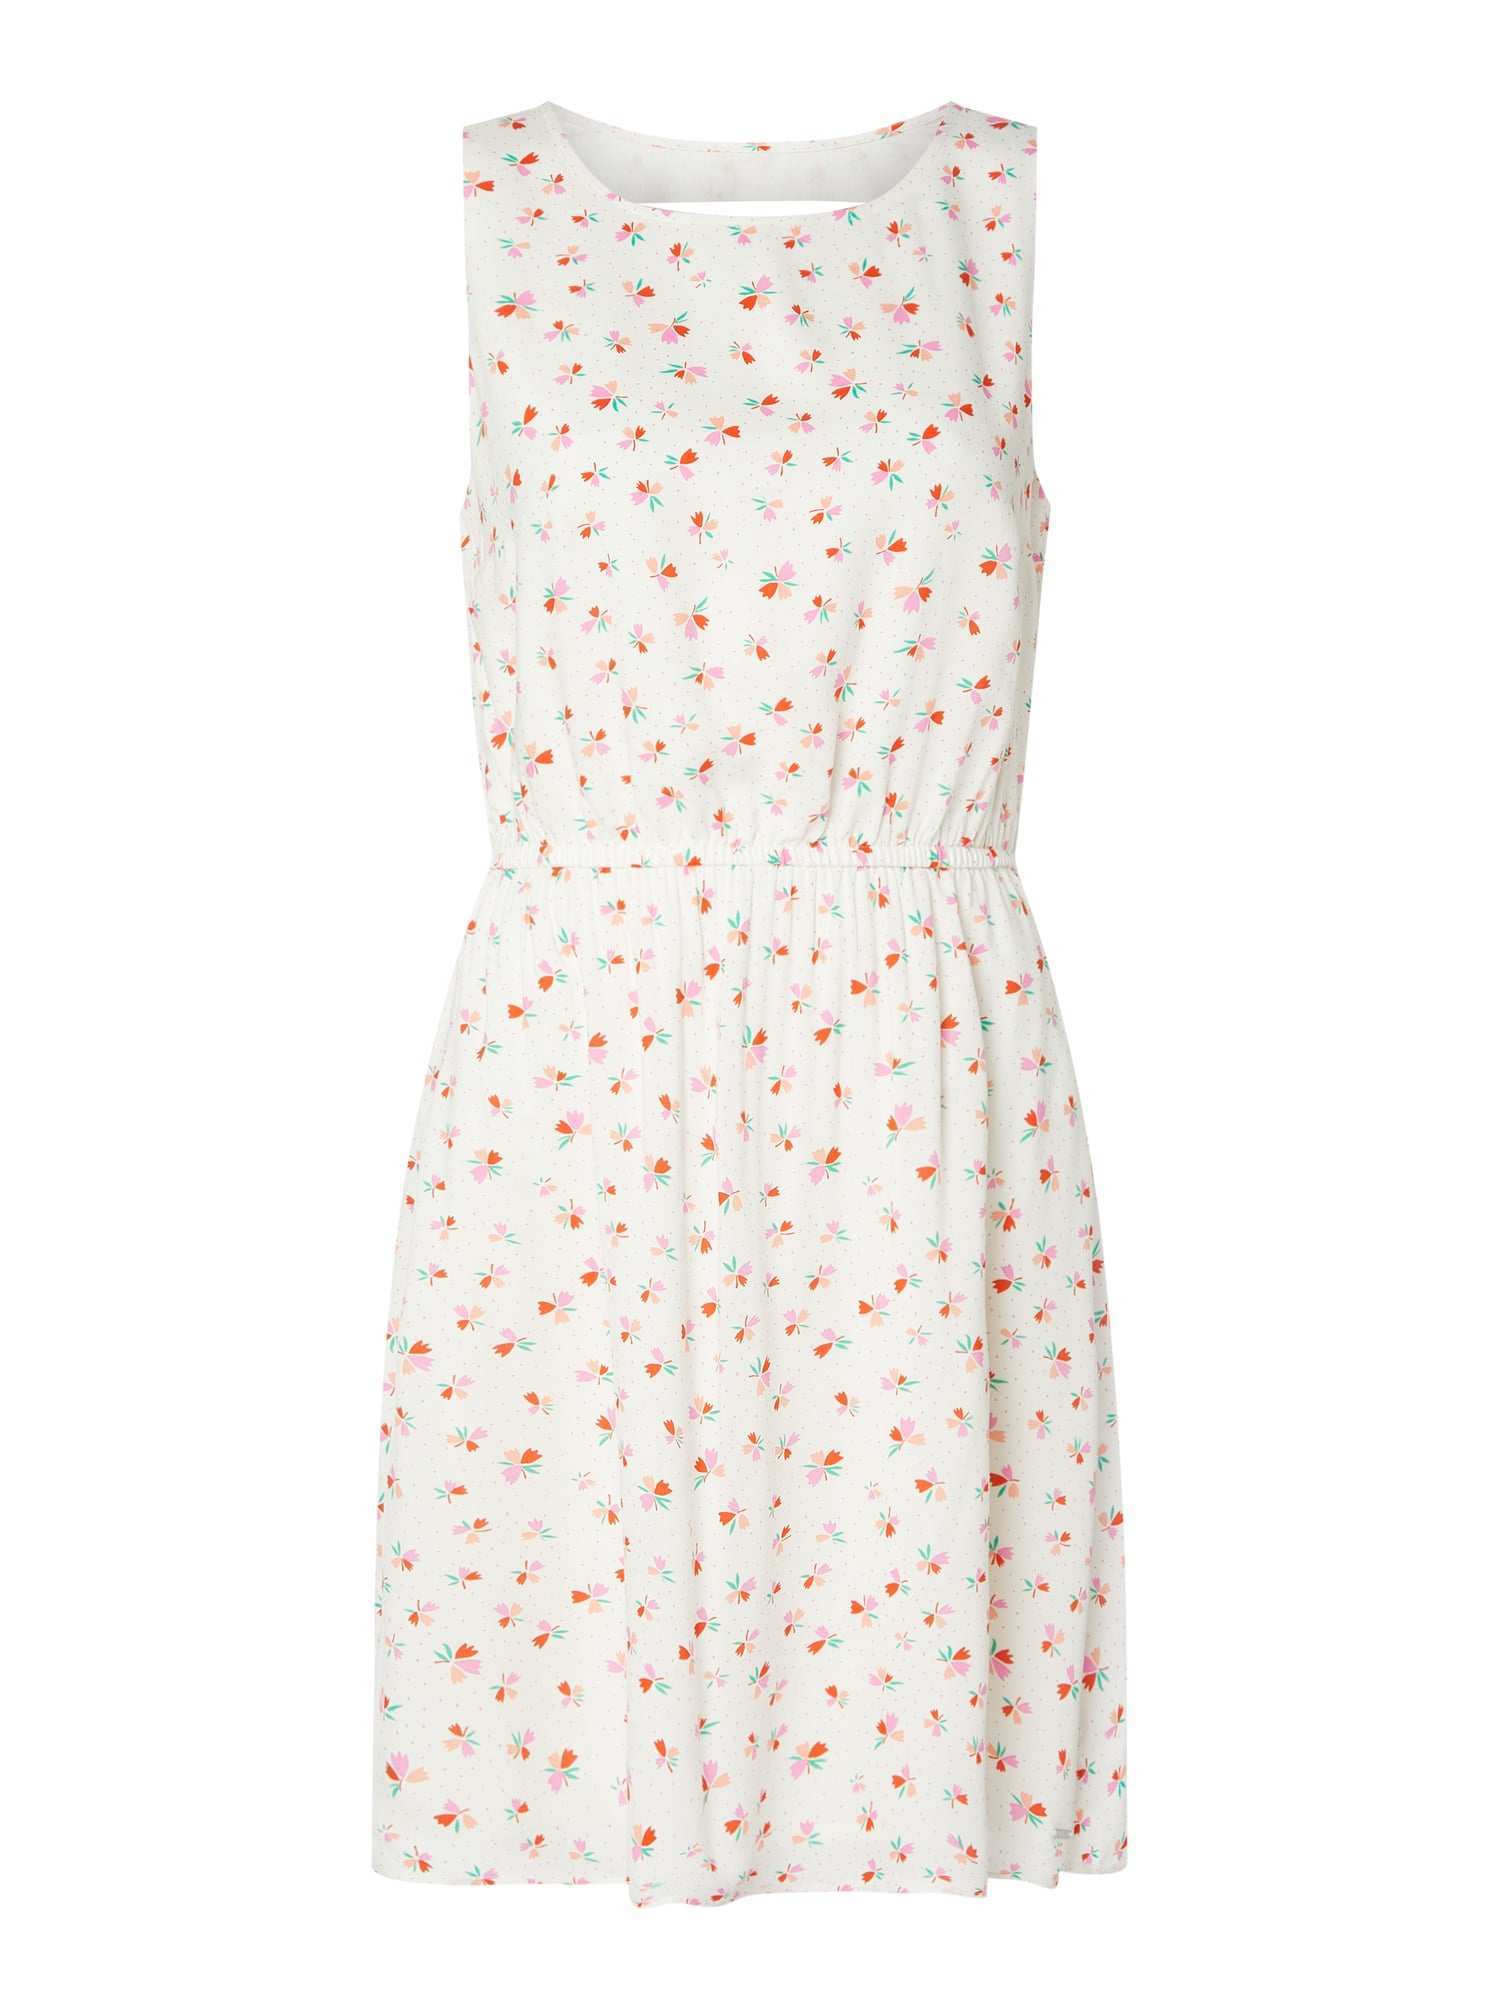 Tom Tailor Denim Kleid Mit Floralem Muster In Weiss Online Kaufen 1098987 P C Online Shop